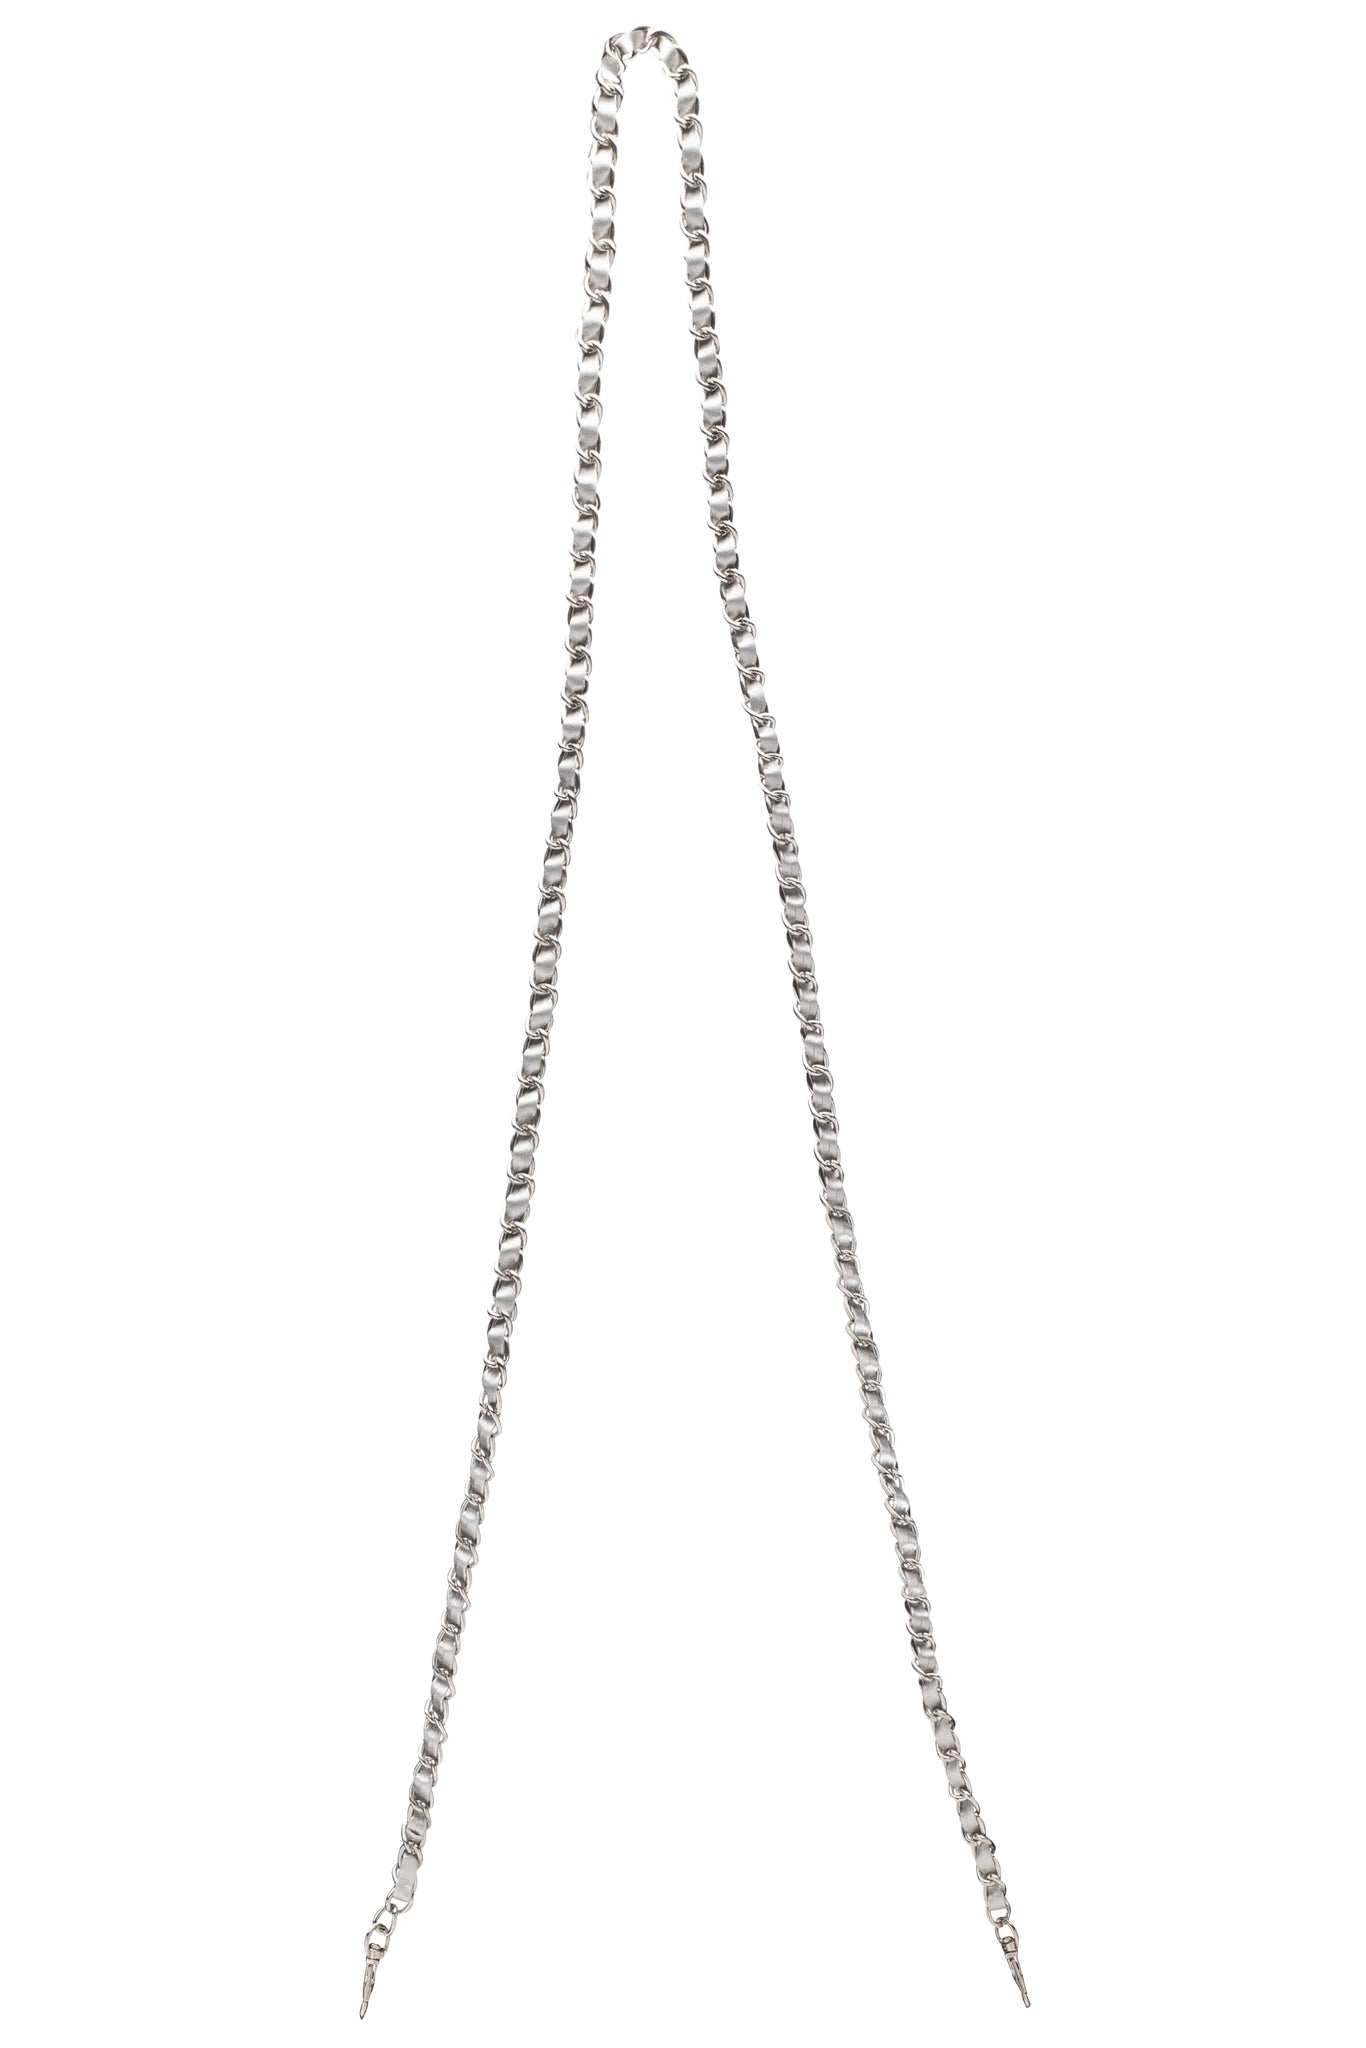 Silver chain purse strap 